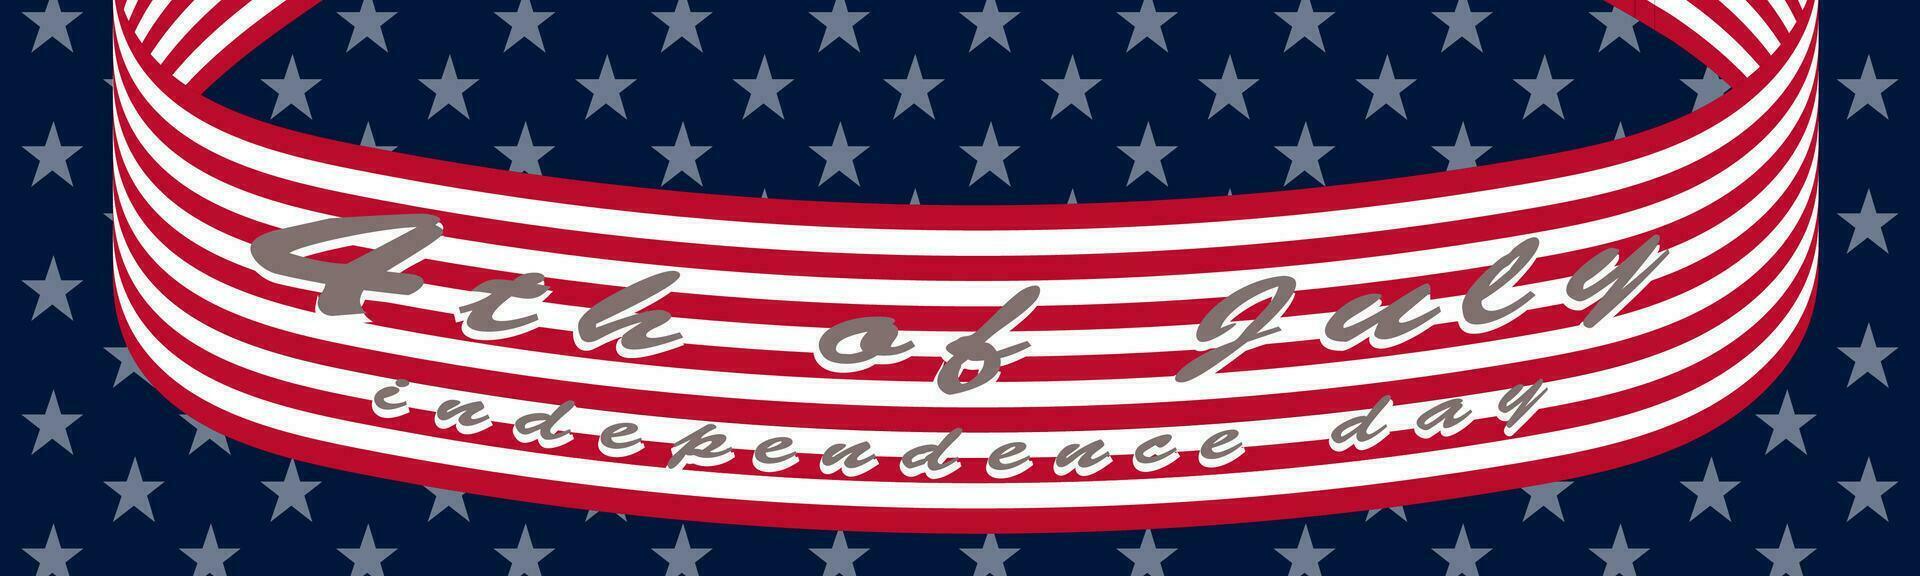 americano bandeira fita bandeira e letras 4 do Julho independência dia vetor